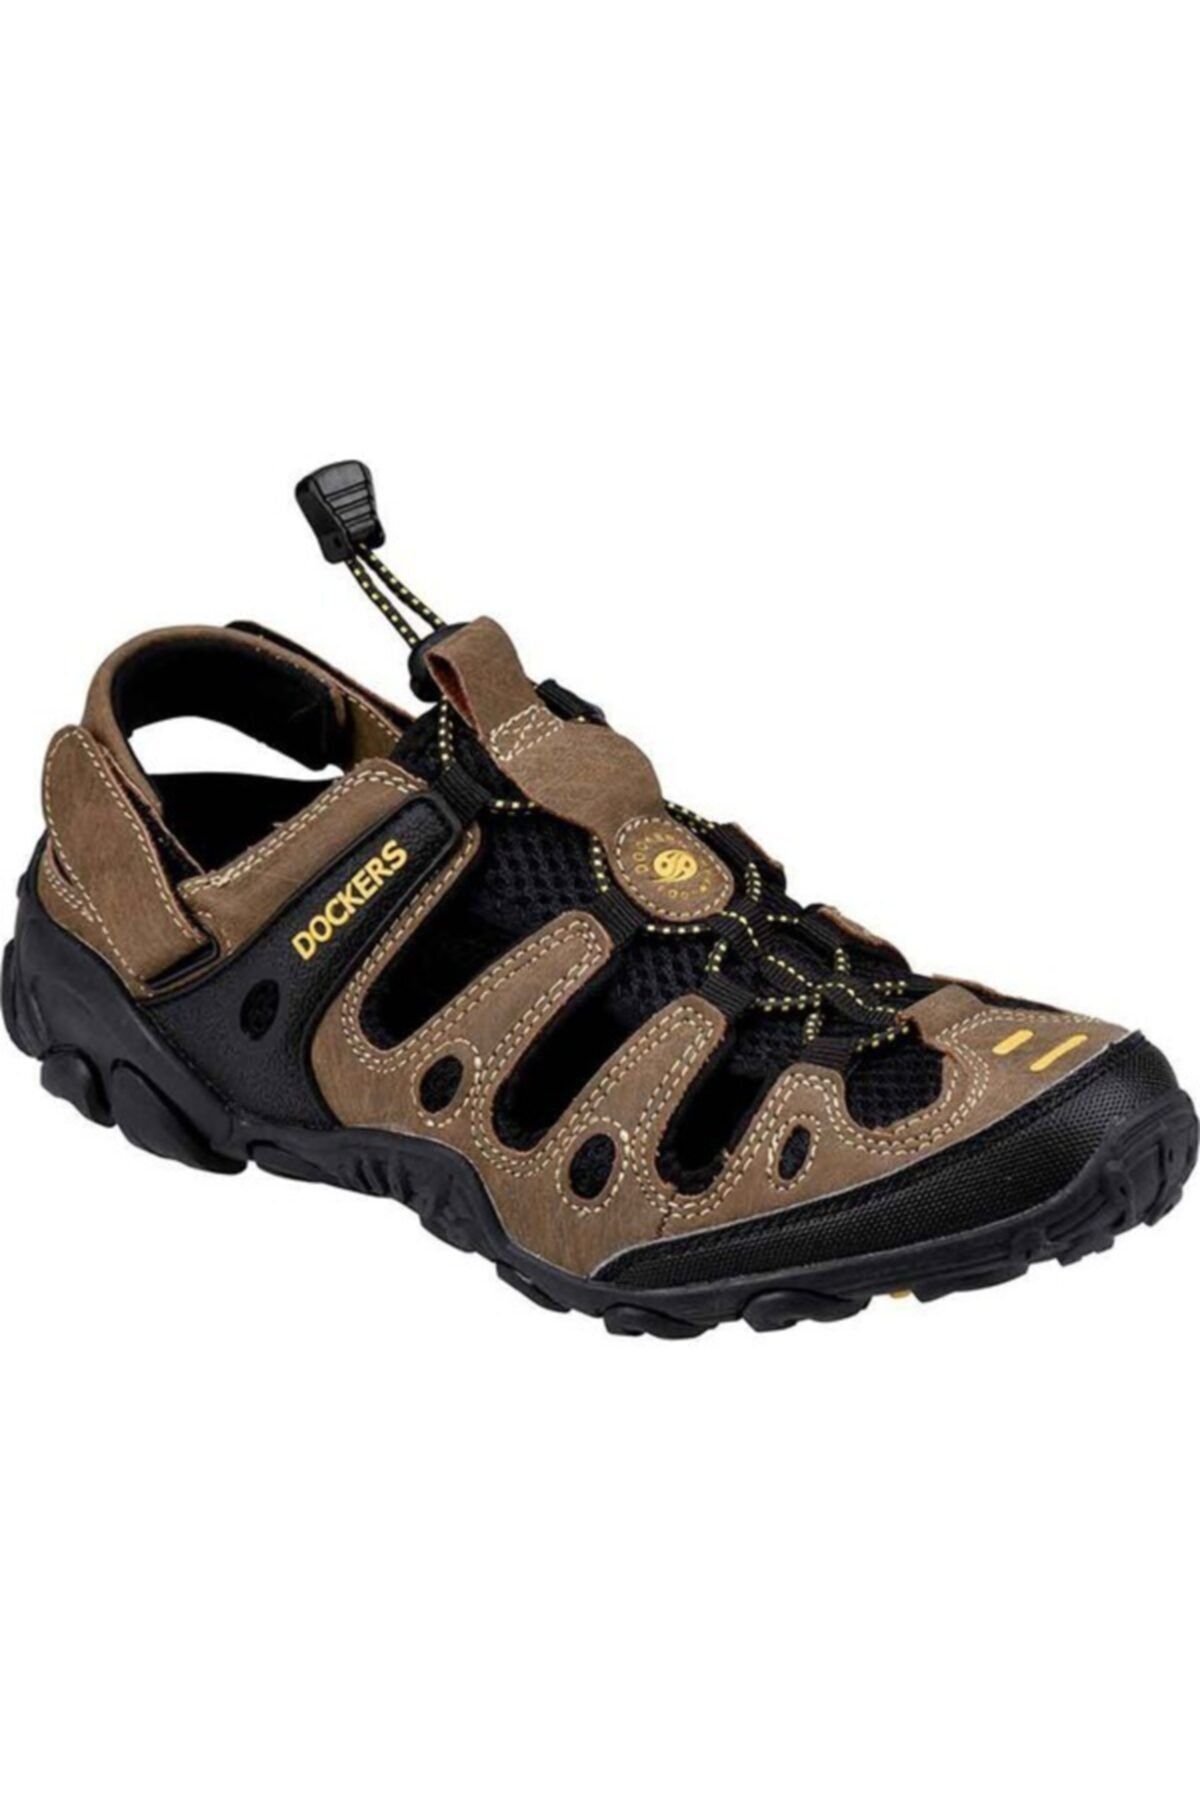 Dockers 216504 Footwear Erkek Sandalet Kahverengi